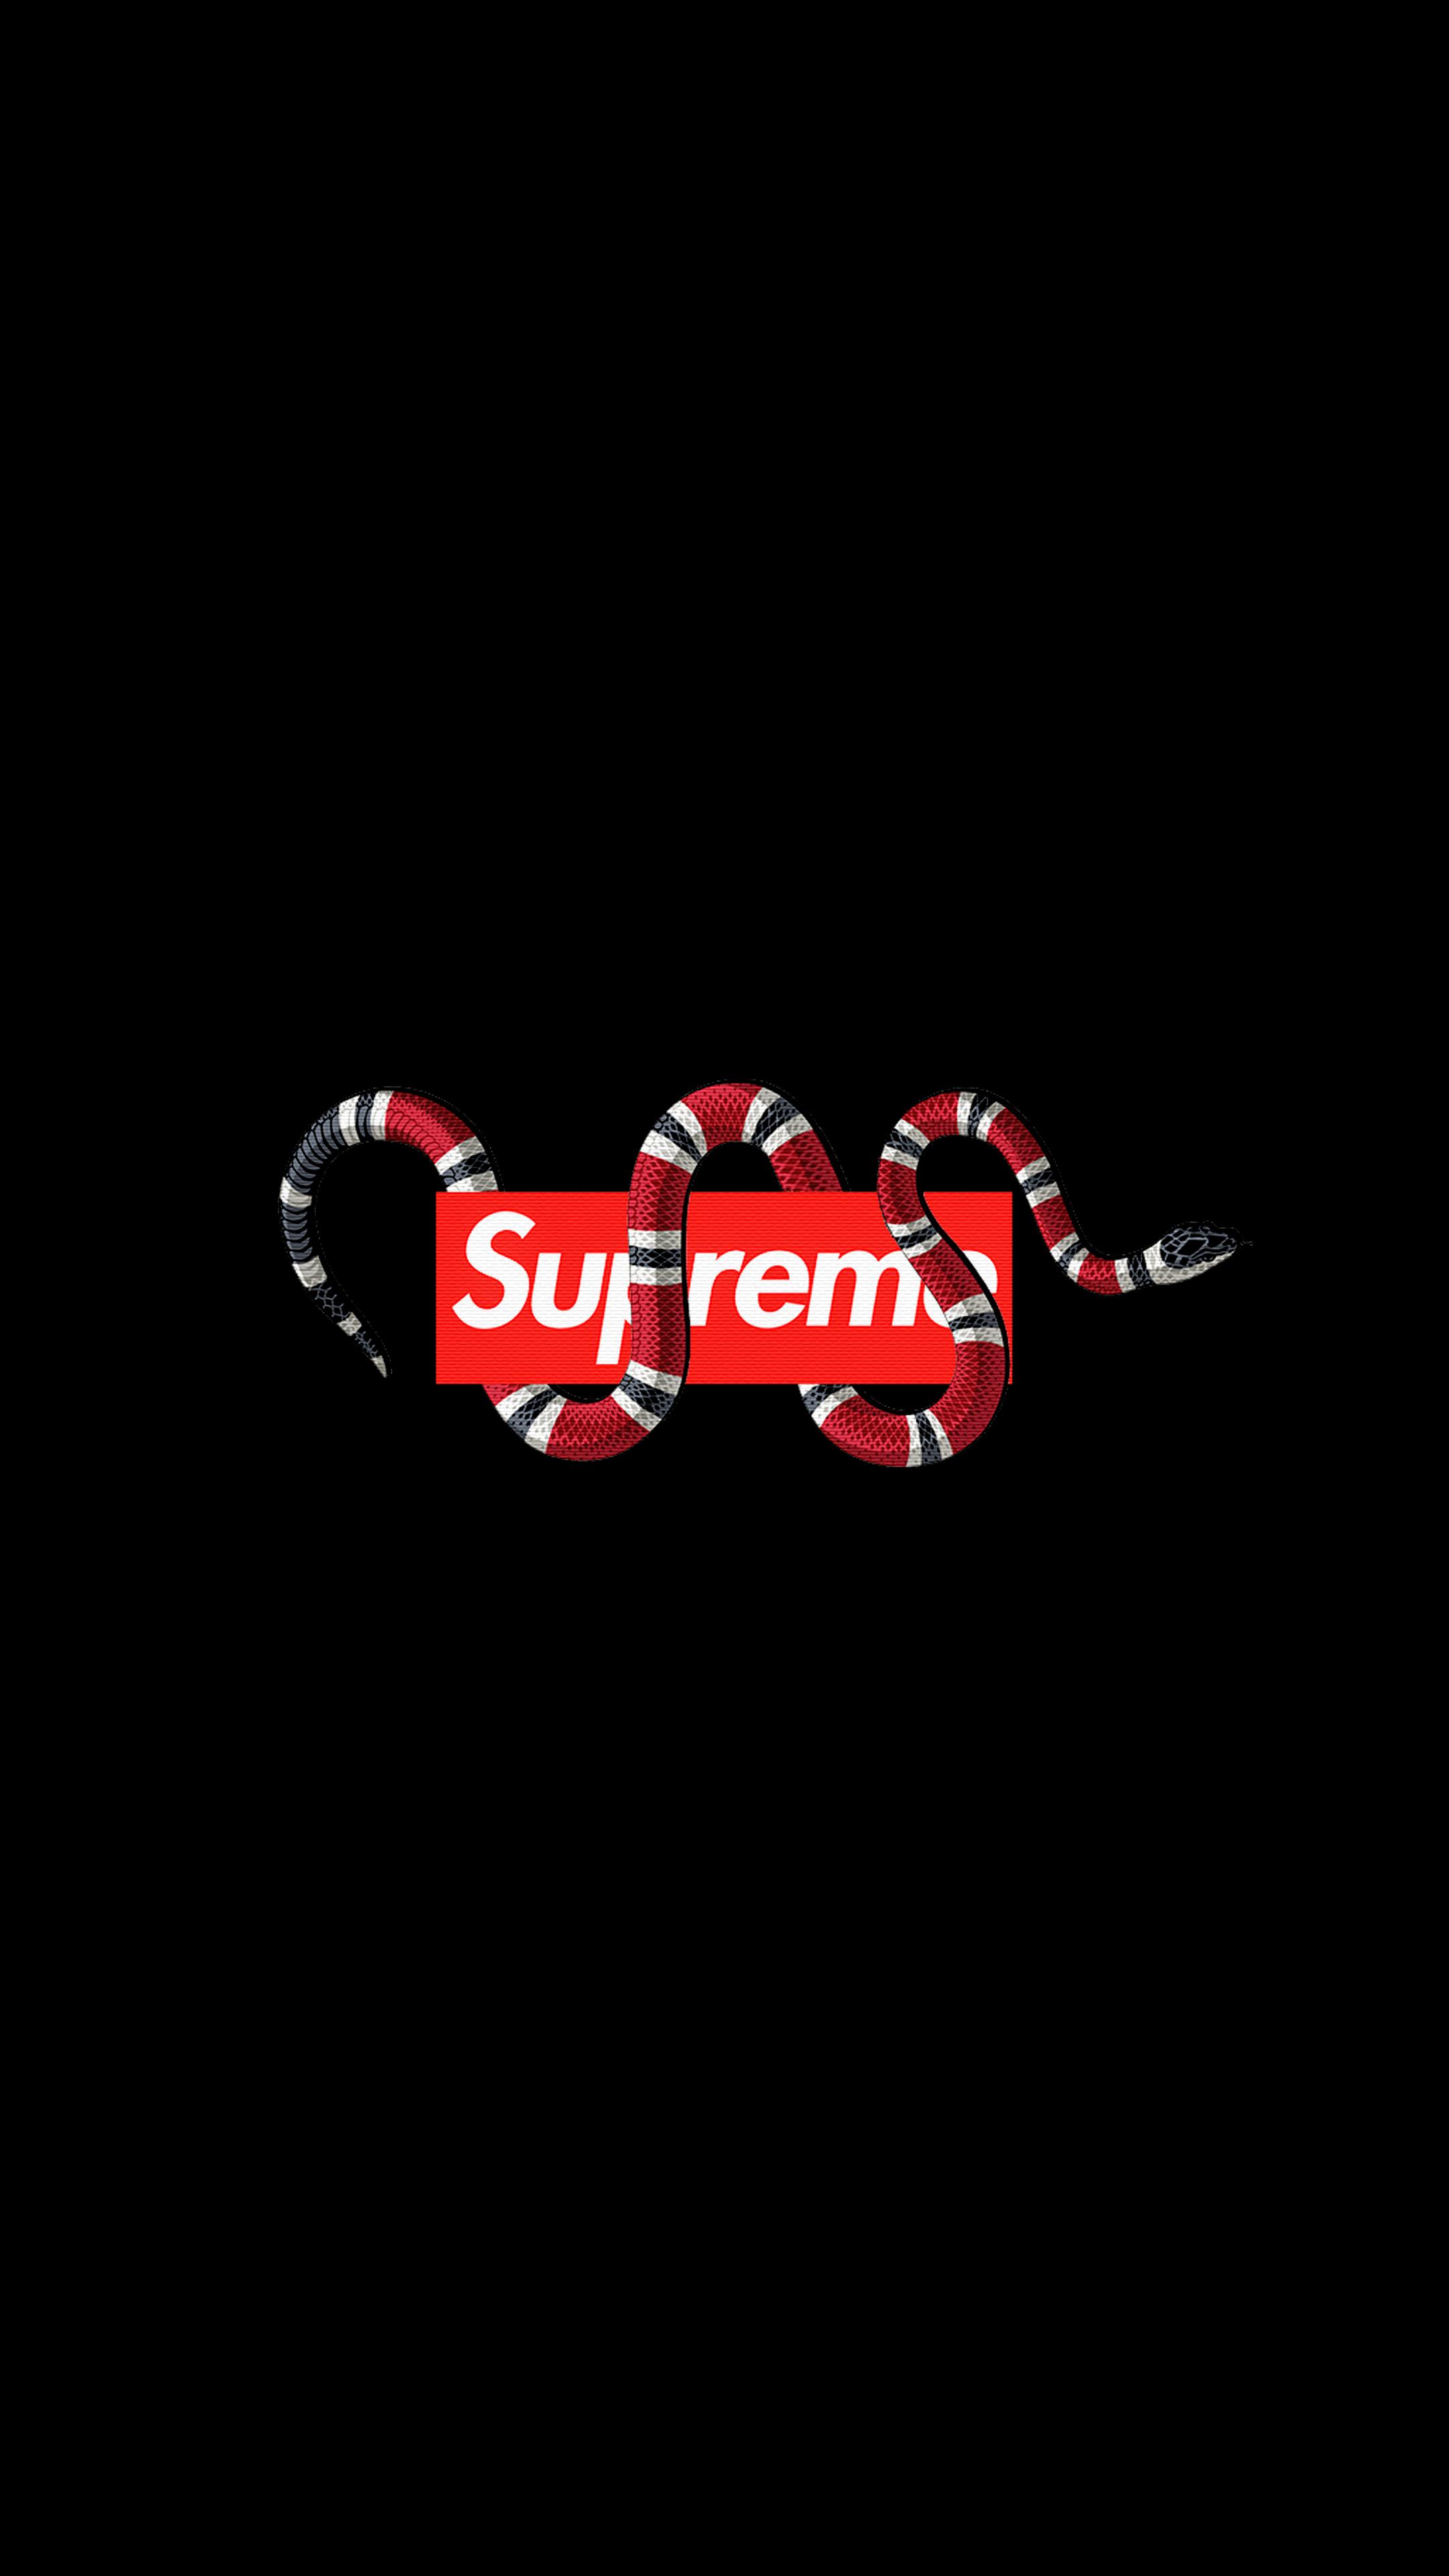 Supreme wallpaper oled snake logo 4K